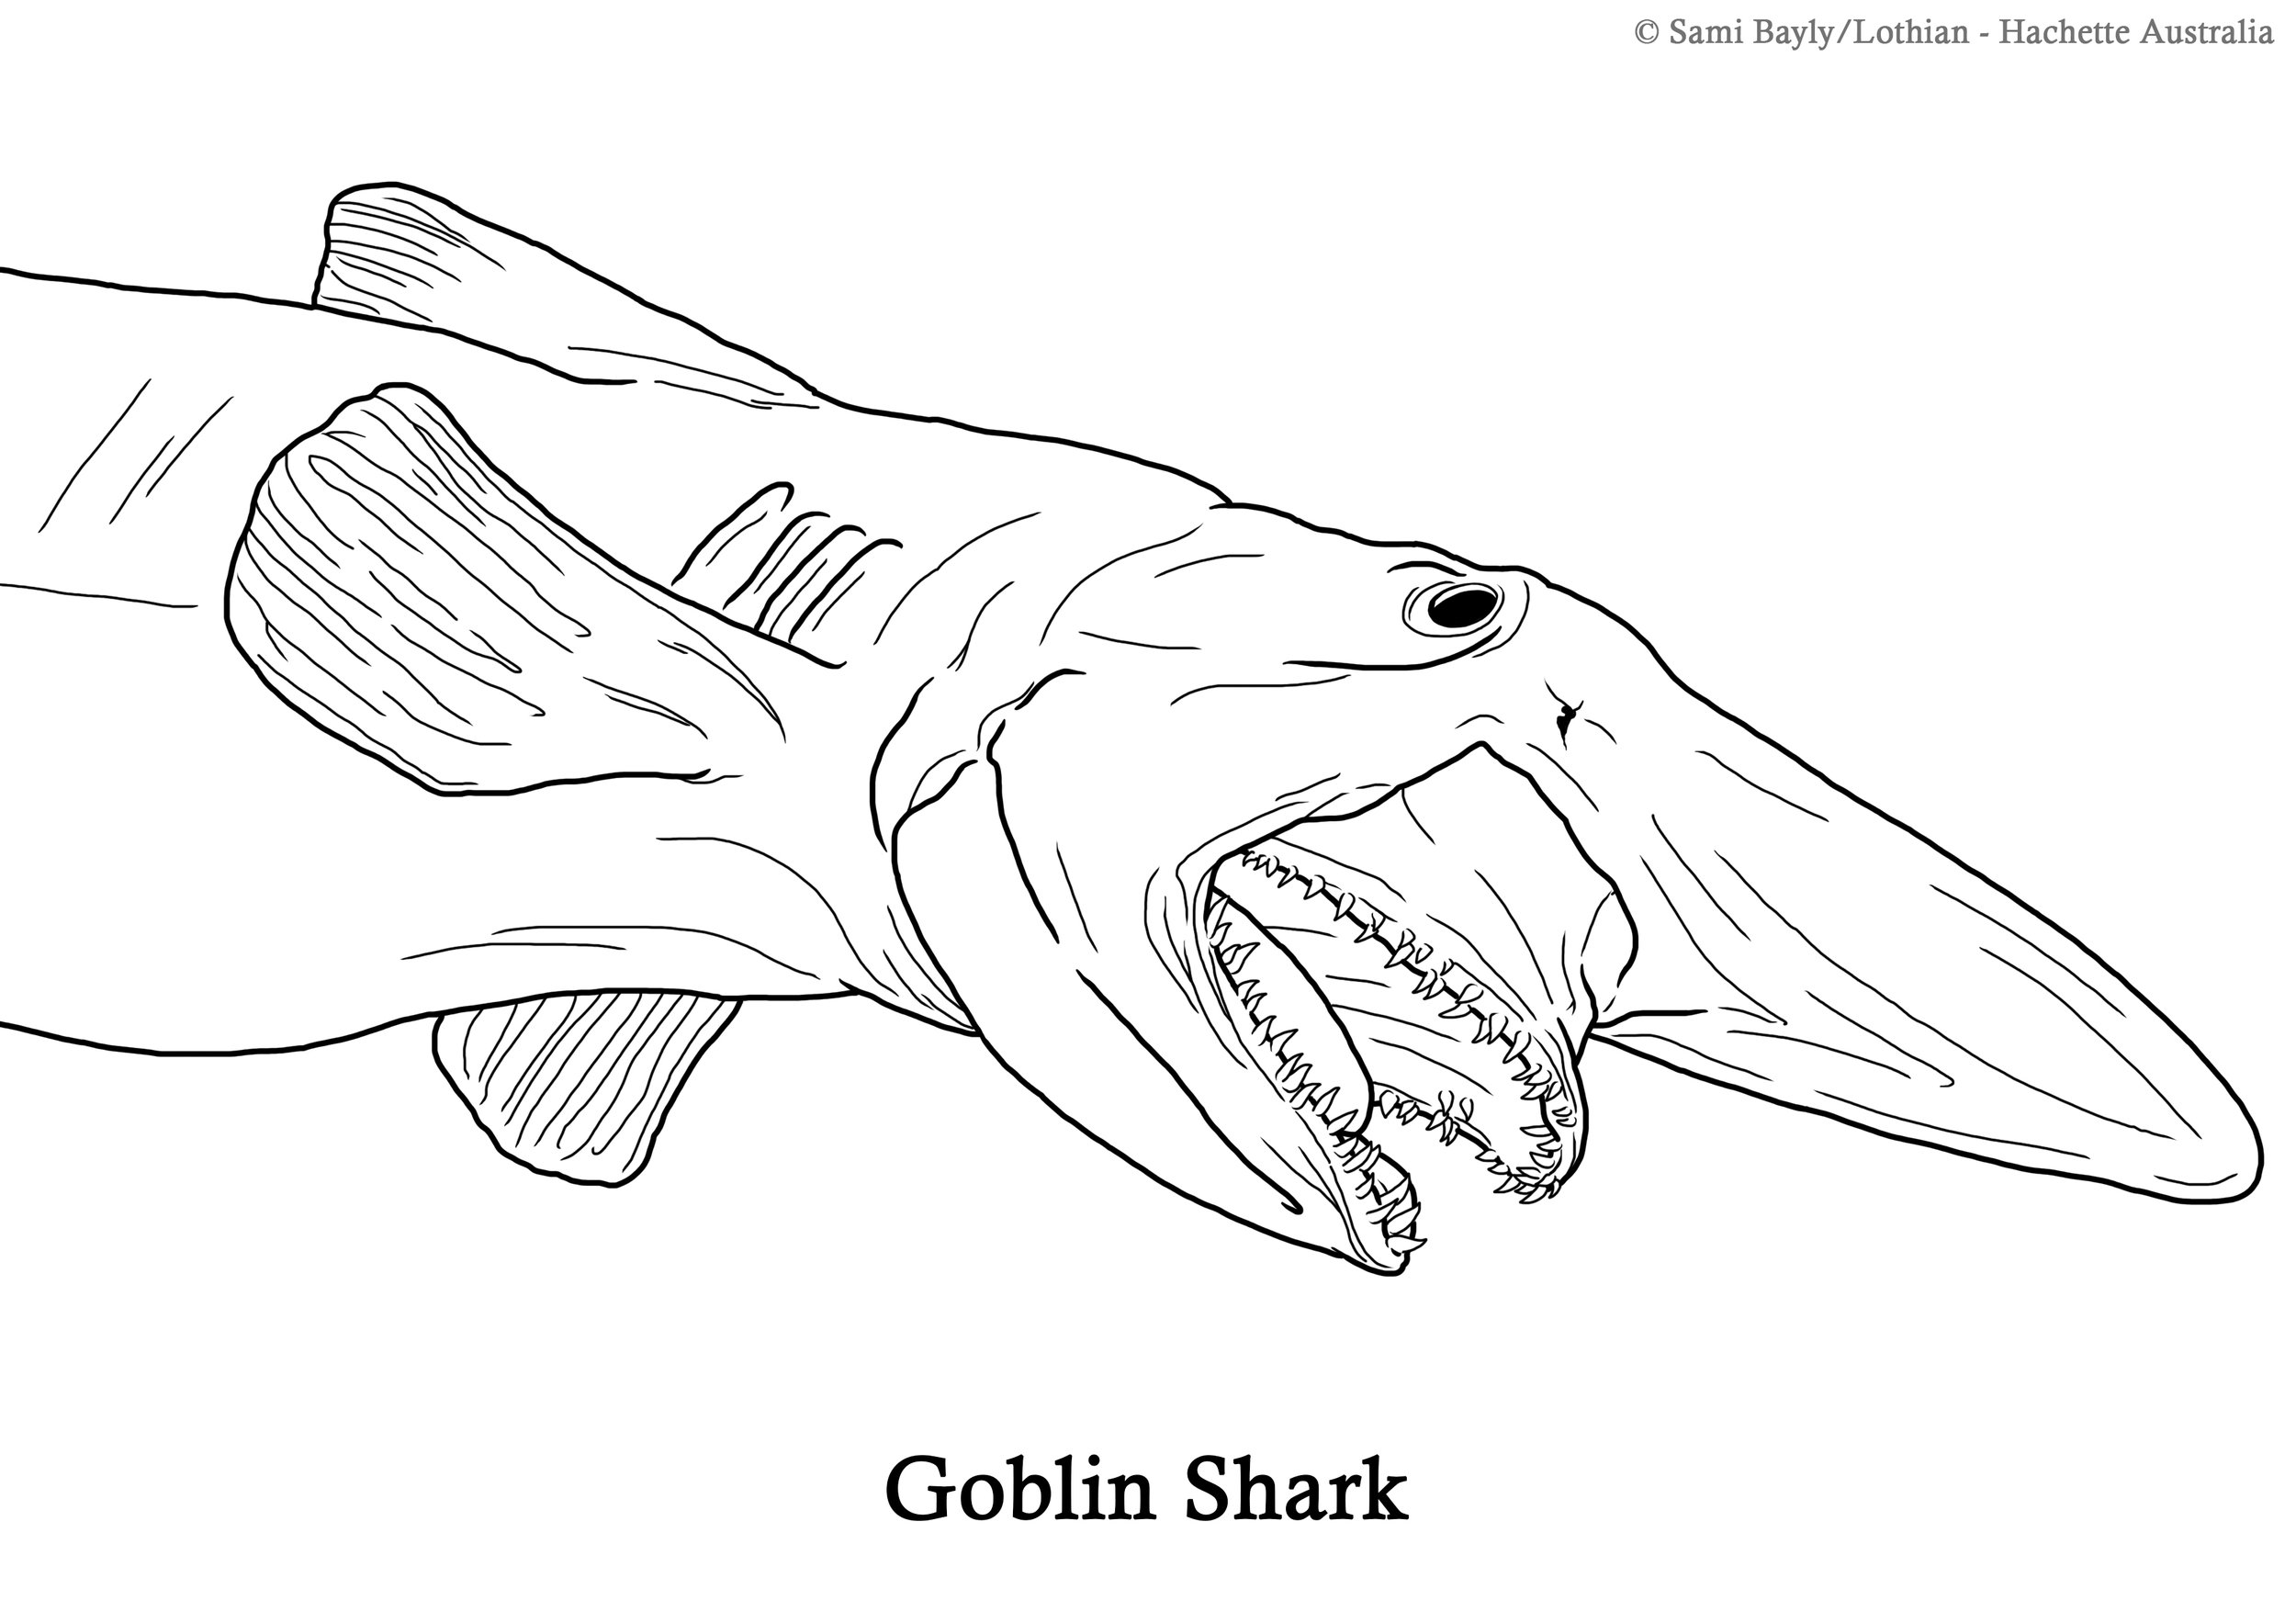 Goblin Shark Line Drawing.jpg